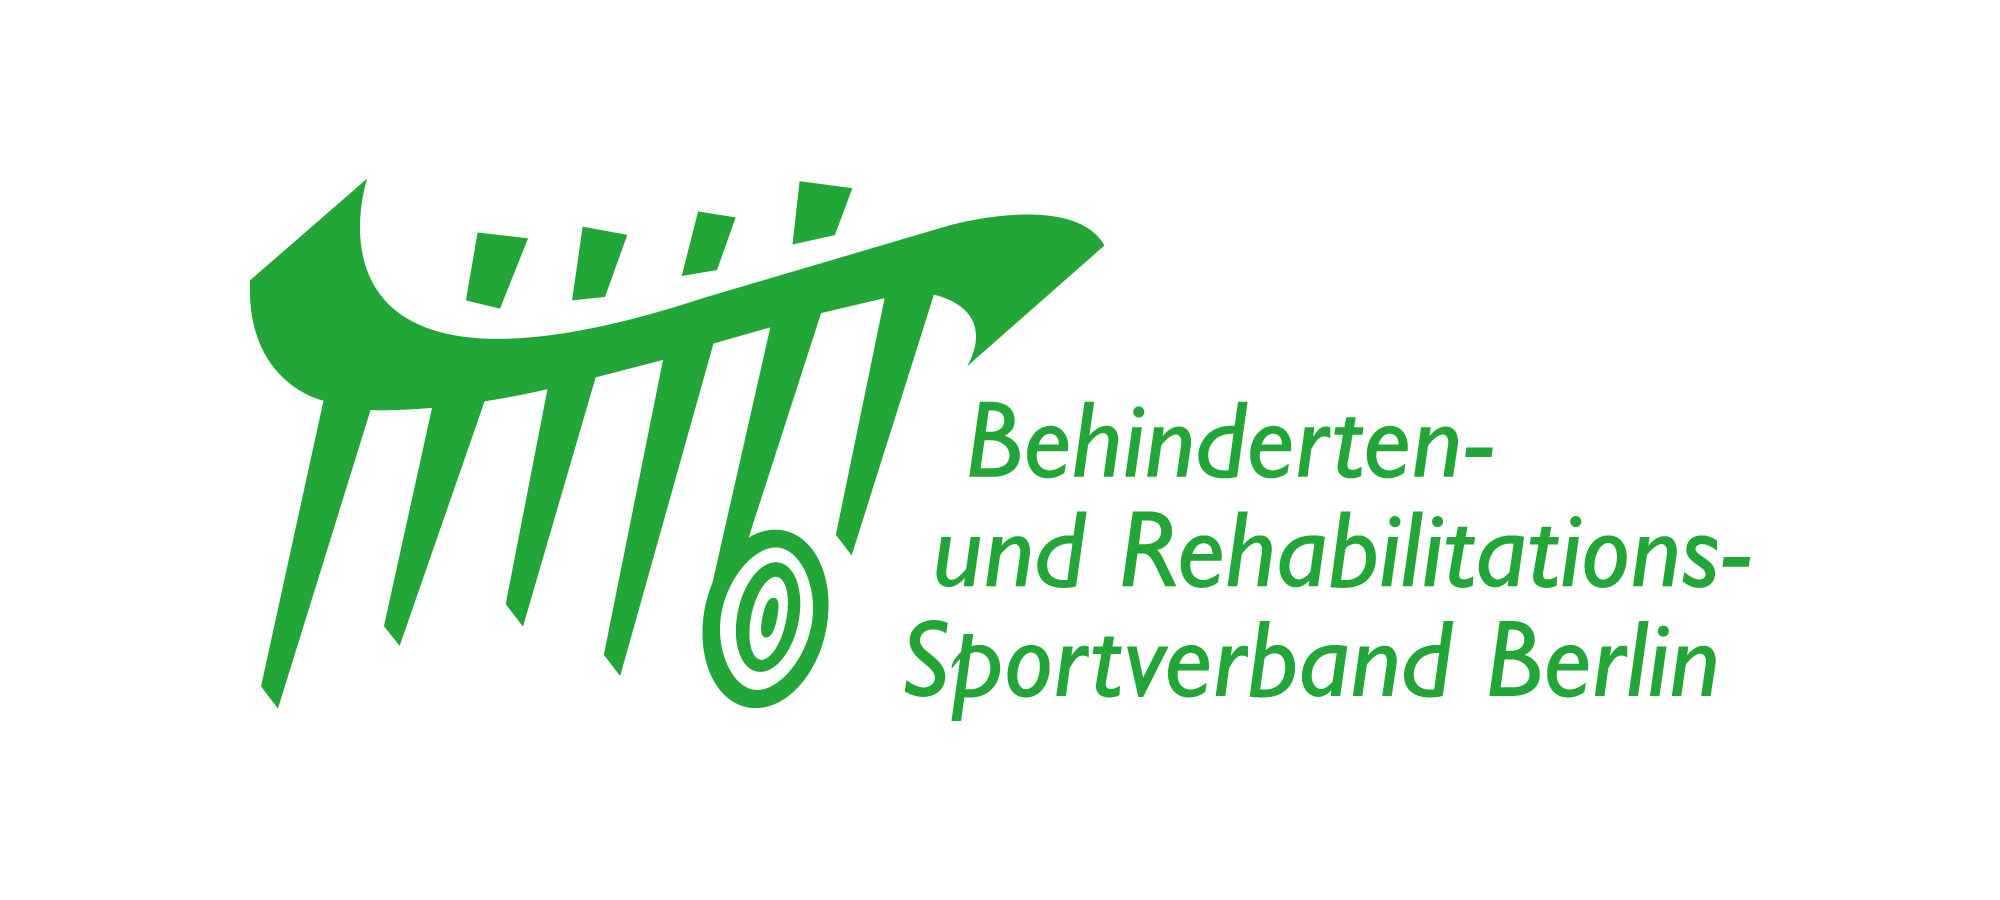 Logo des Behinderten- und Rehabilitations-Sportverbands Berlin - grüne Schrift klein